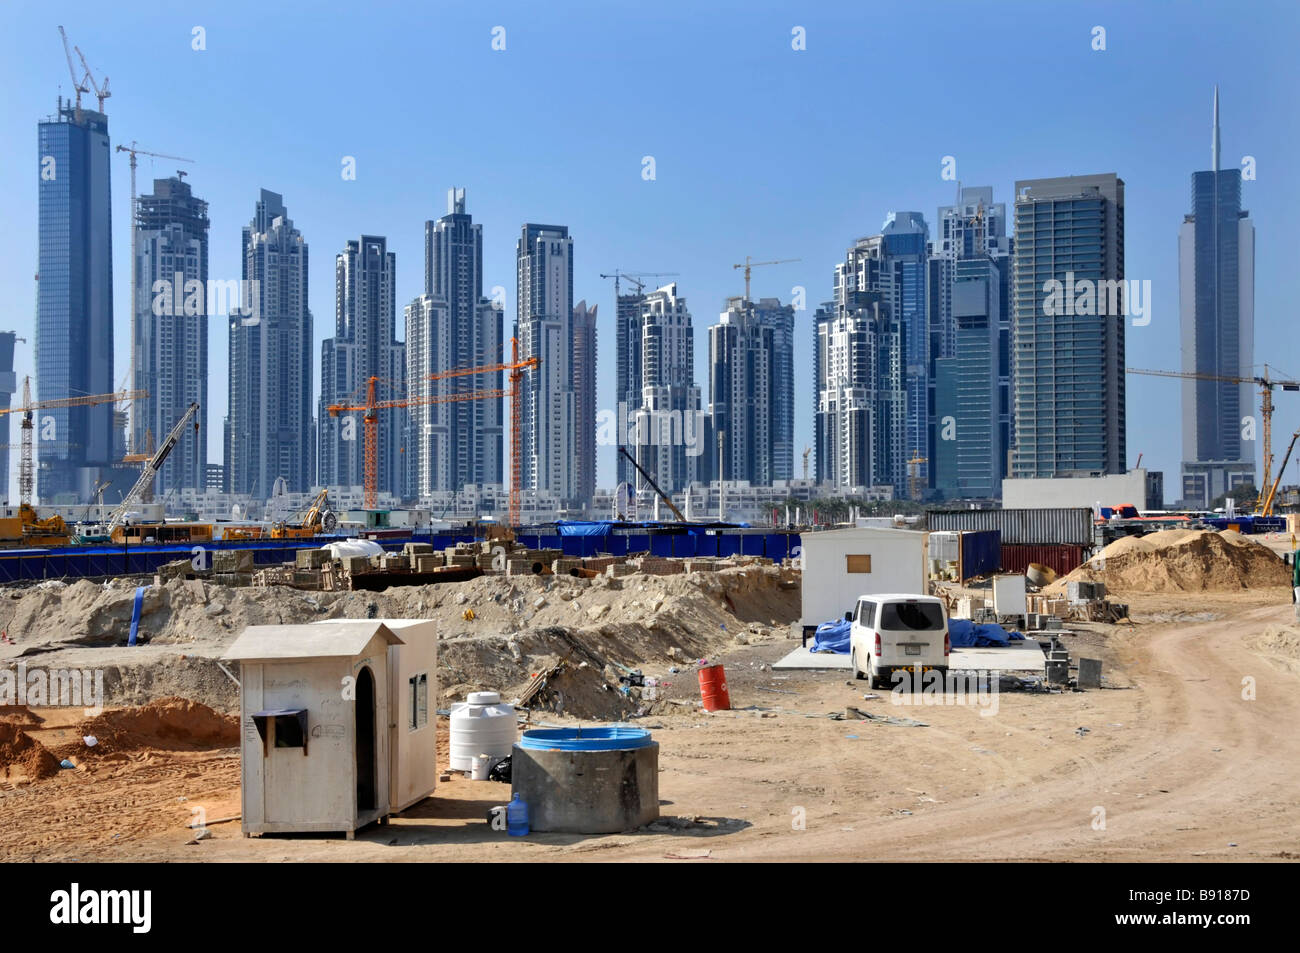 Dubai big Bau Baustelle mit vielen hohen Wolkenkratzern einige einige laufende Arbeiten mit Kranen in Dubai Vae Naher Osten Asien abgeschlossen Stockfoto